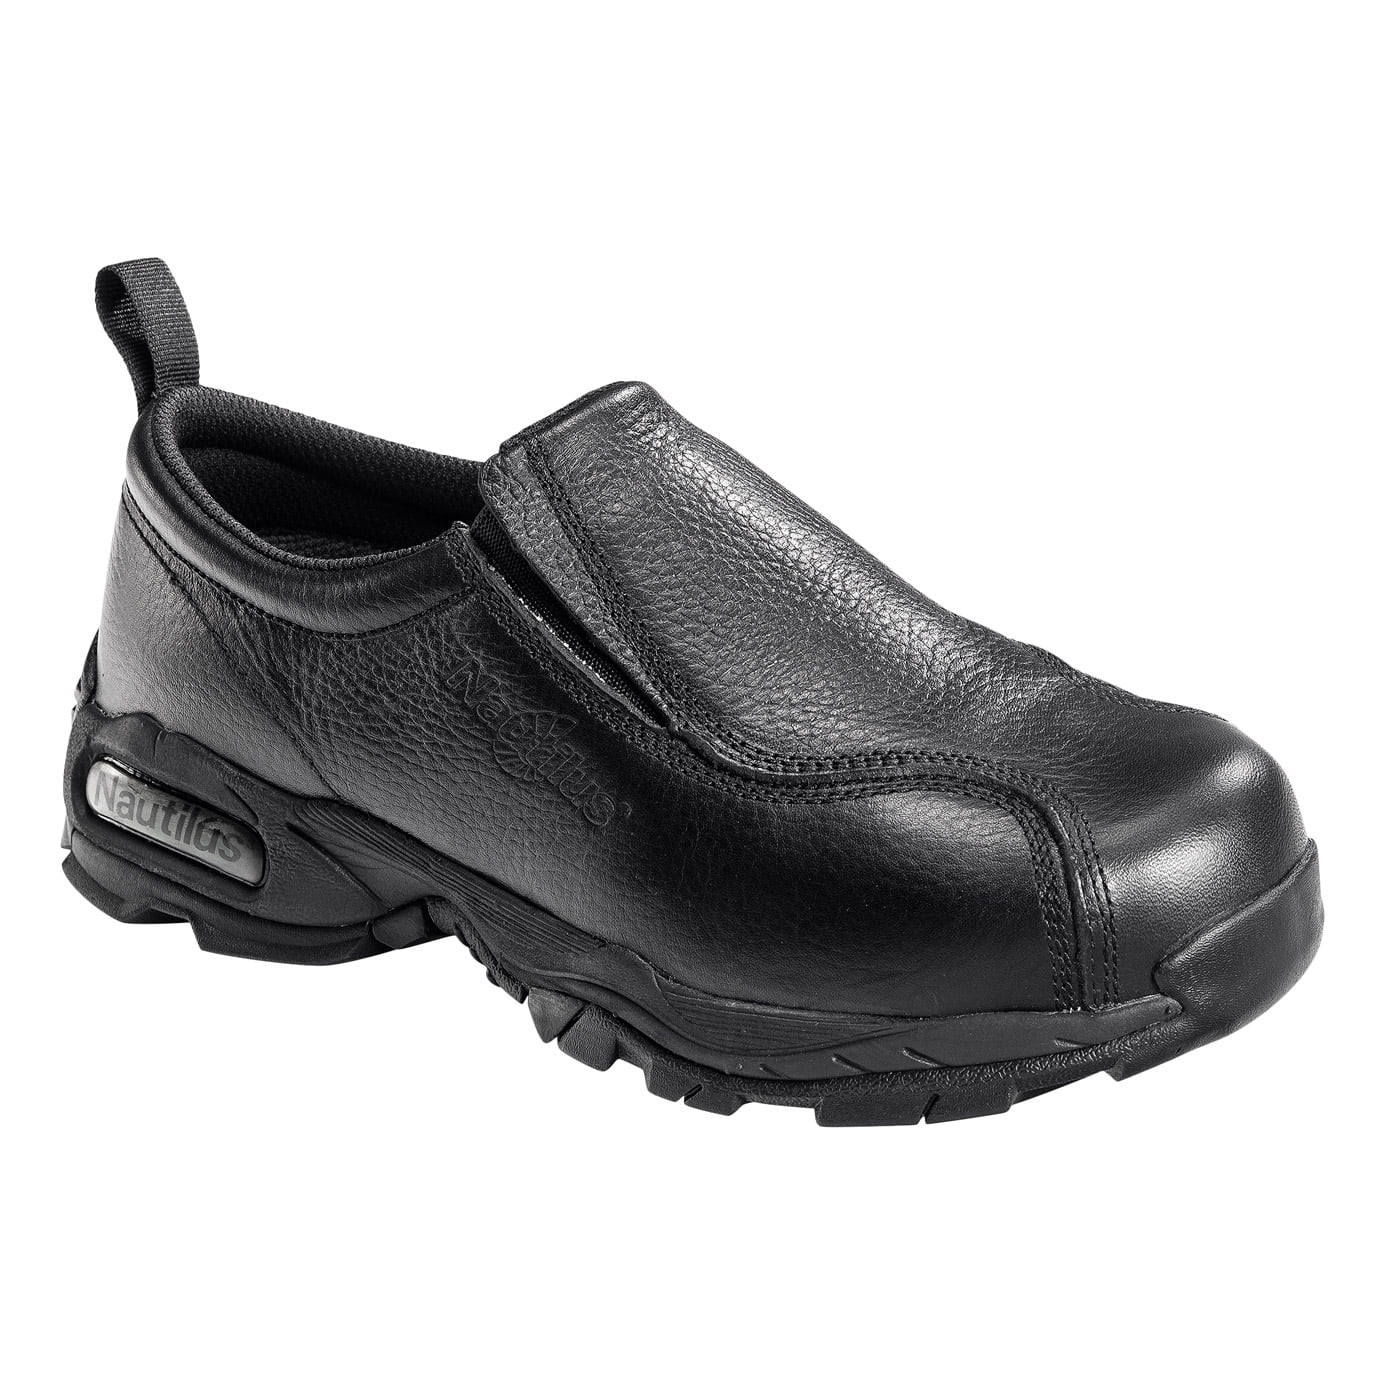 Women's Black Leather Slip On Steel Toe Shoe - Walmart.com - Walmart.com